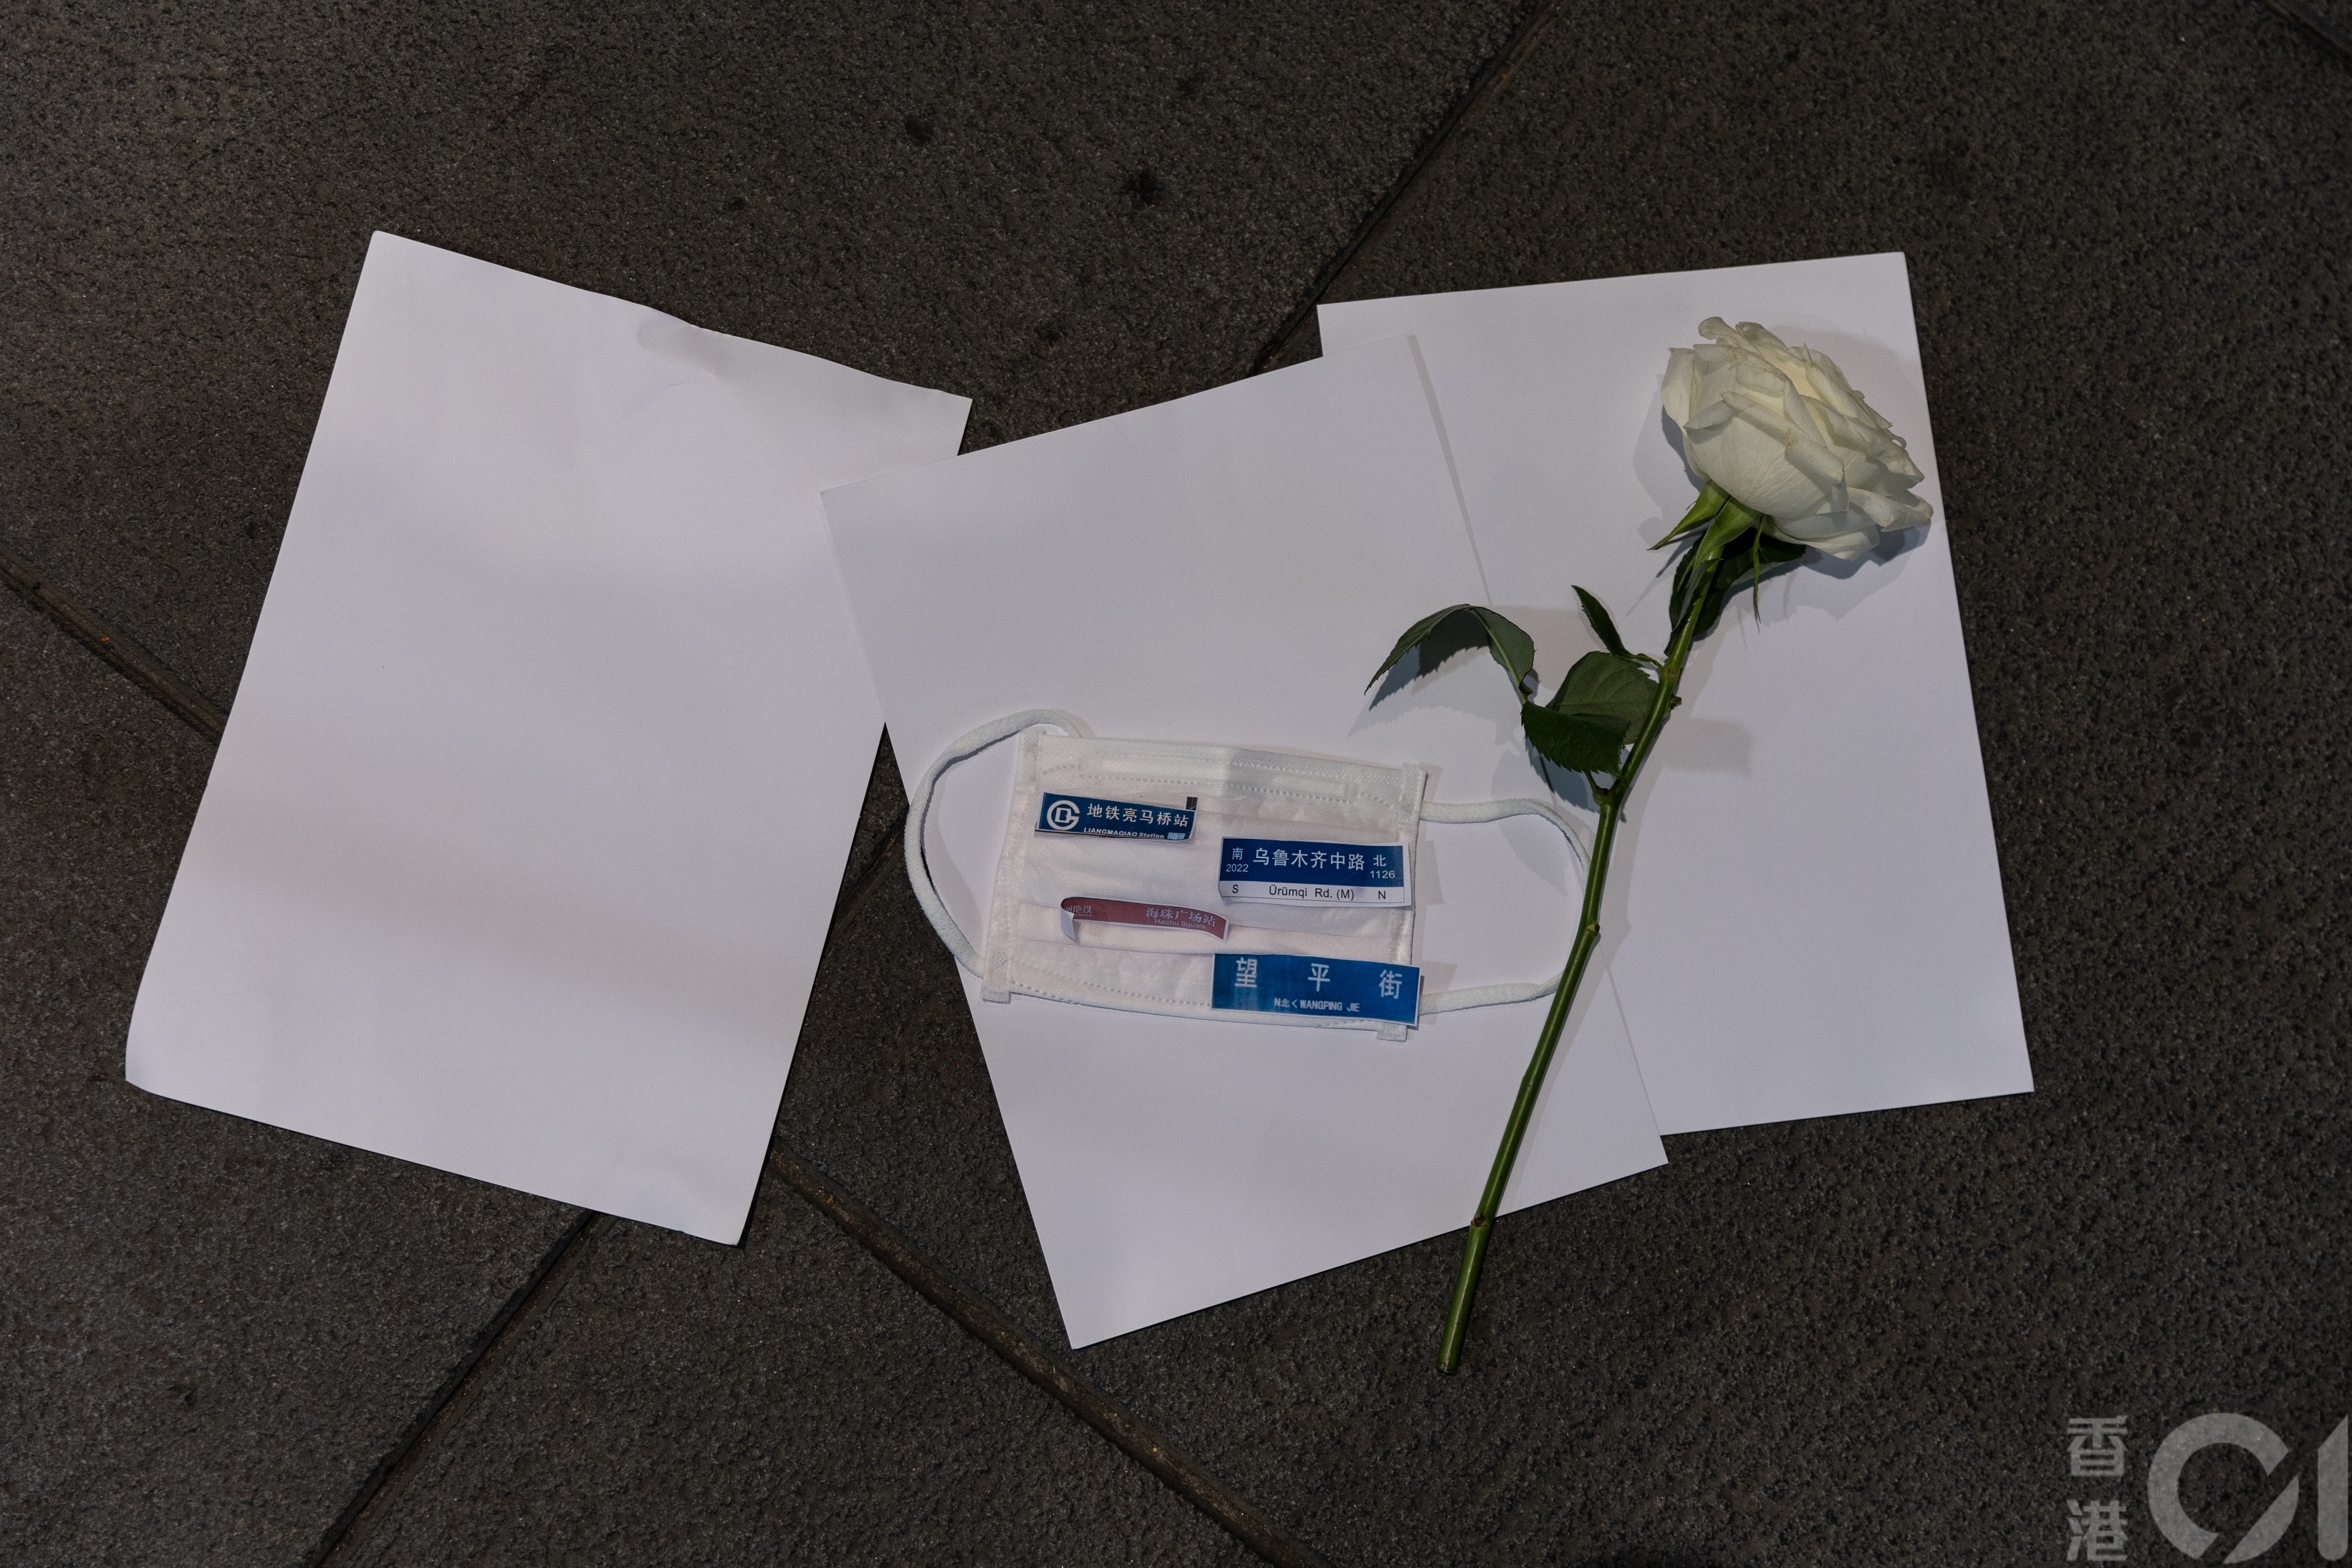 优享资讯 | 百人中环中大拿白纸悼念新疆大火死者 「王婆婆」遭青年抢伞推倒